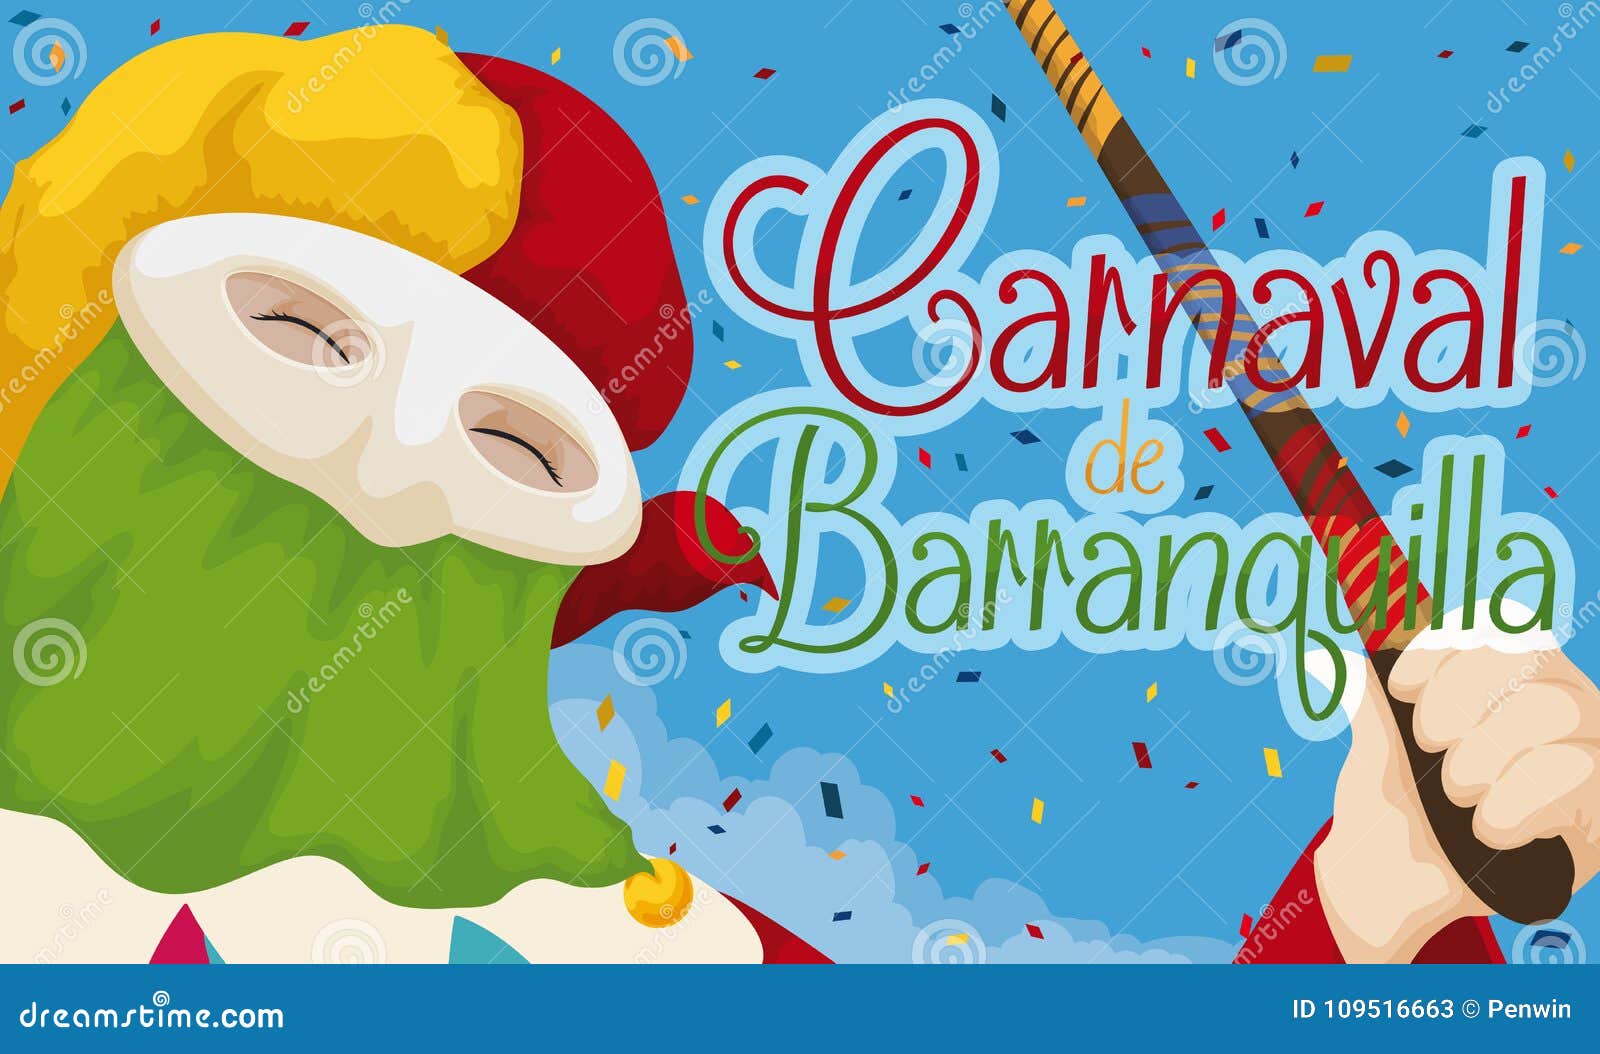 traditional monocuco celebrating barranquilla`s carnival with confetti,  